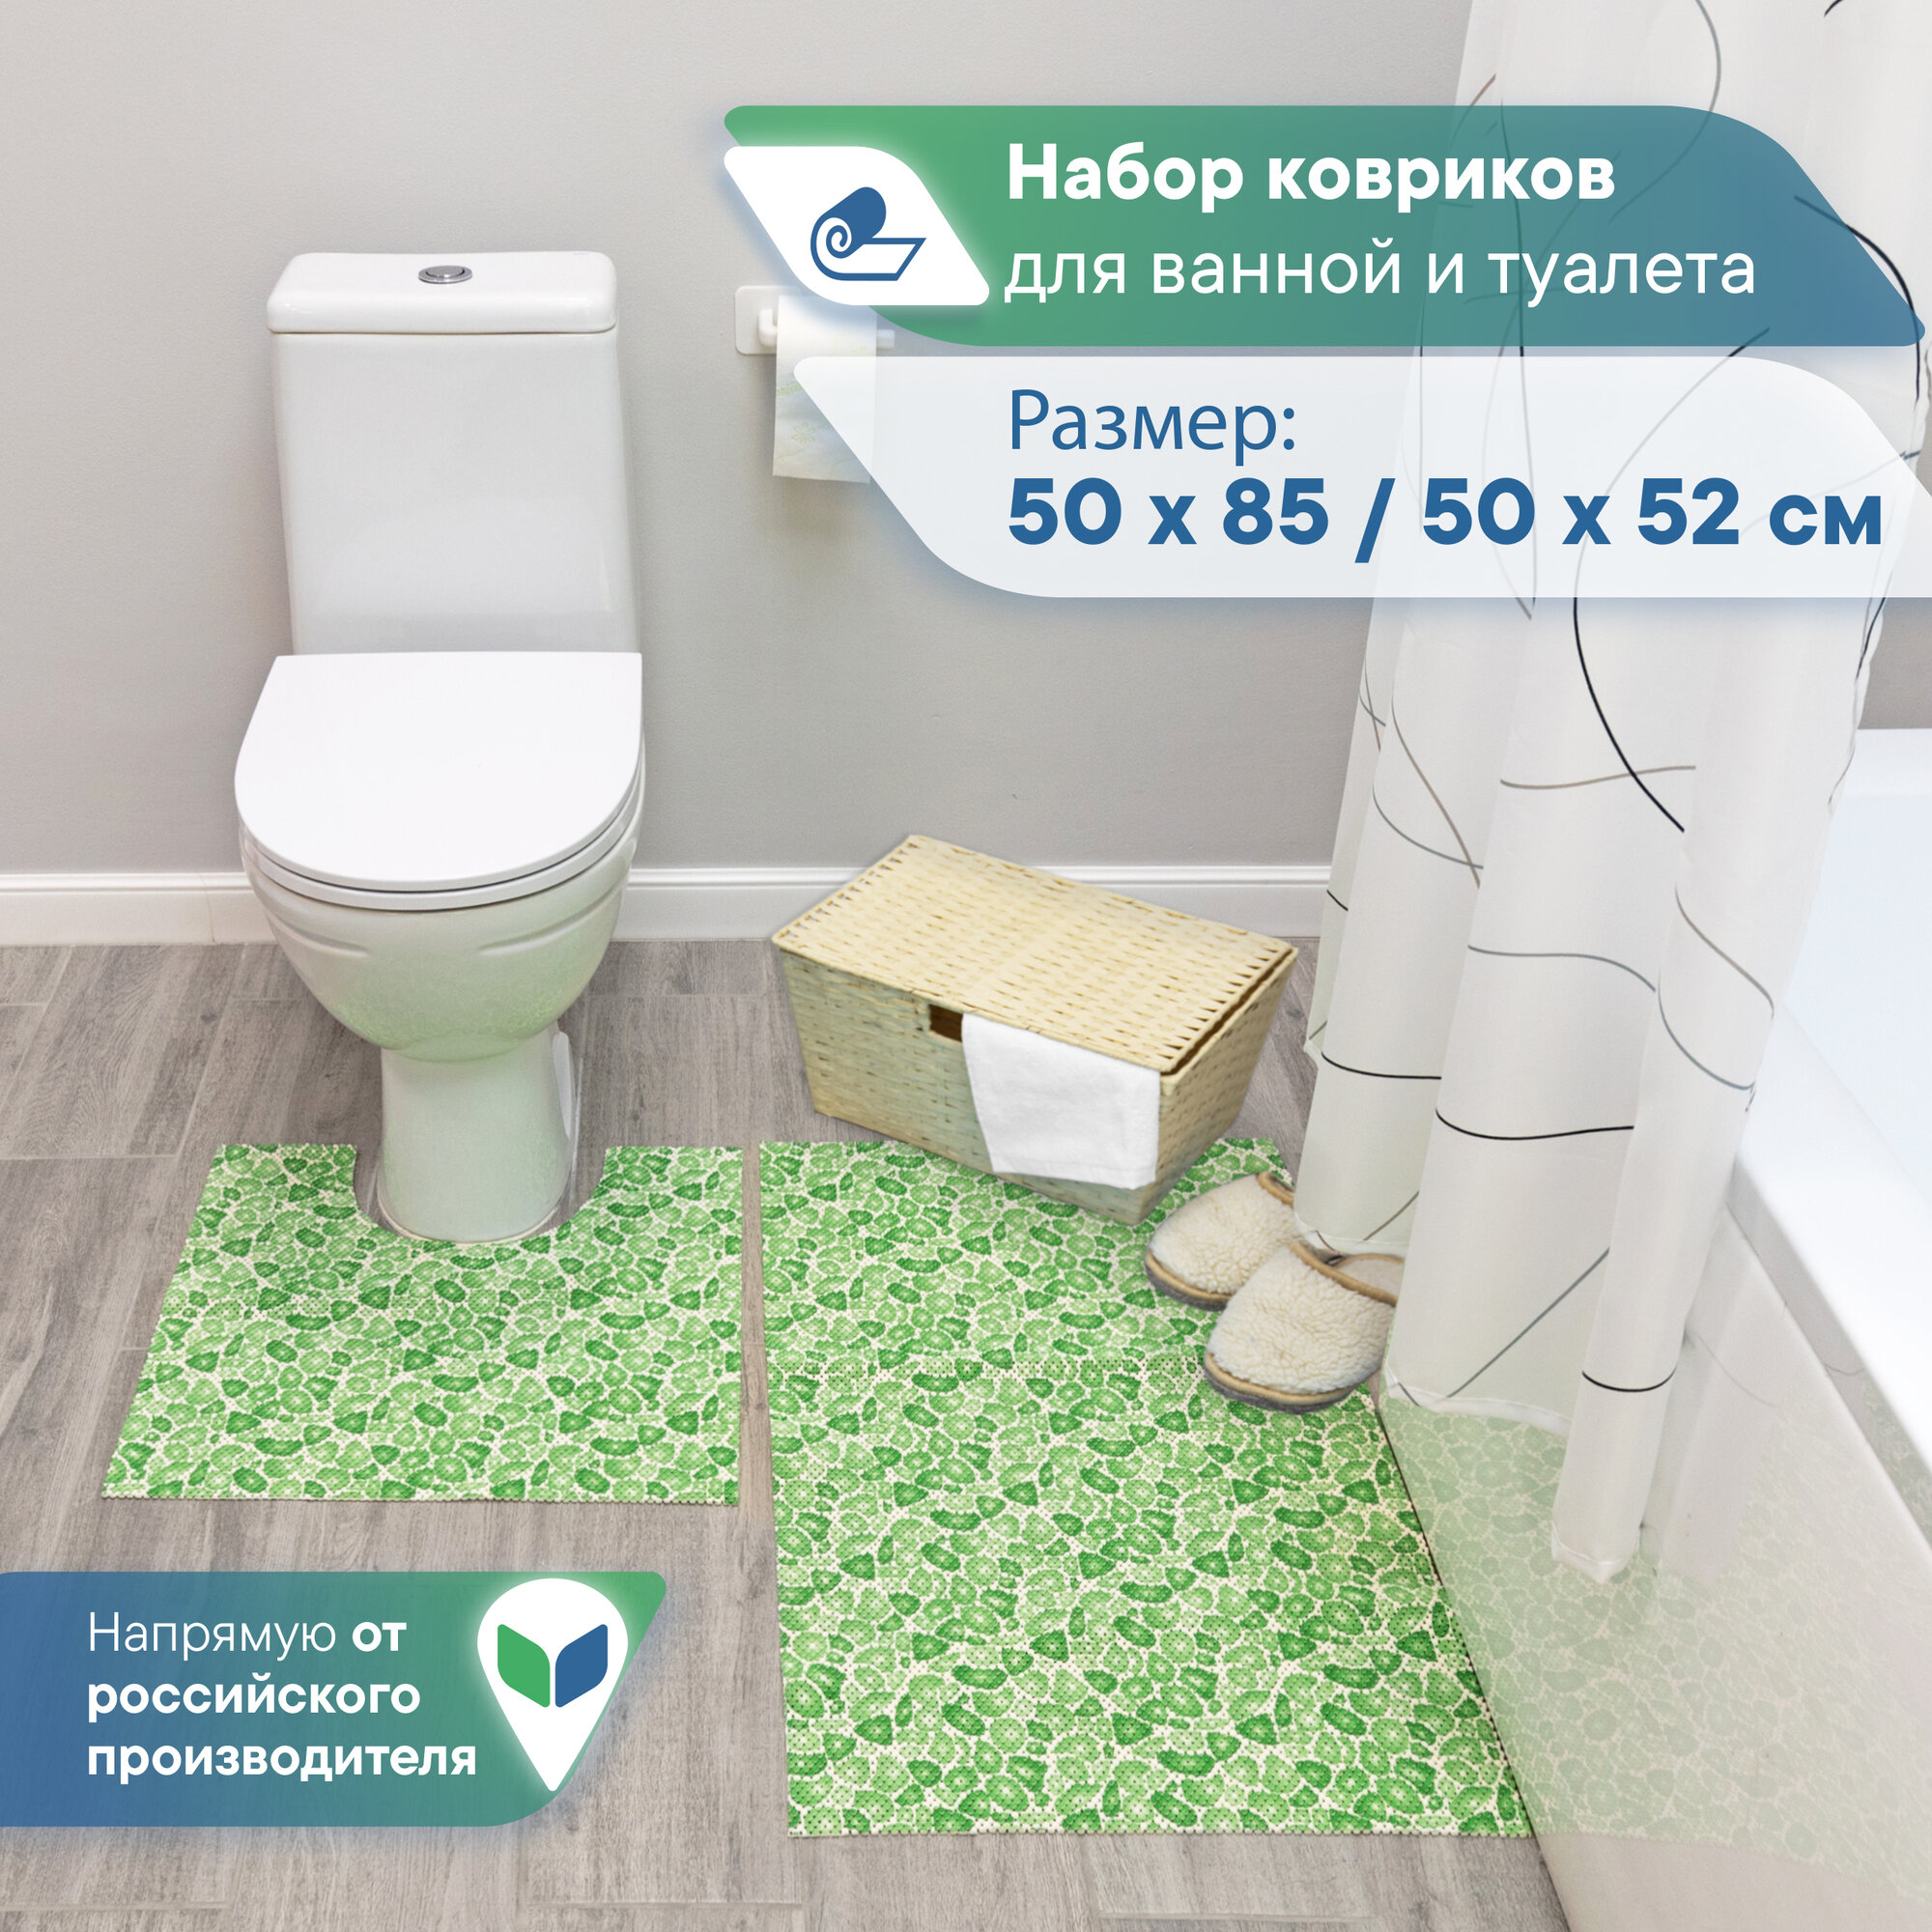 Набор ковриков для ванной и туалета VILINA из вспененного ПВХ 50х52 см, 50х85 см 2шт. V15GR зелёный